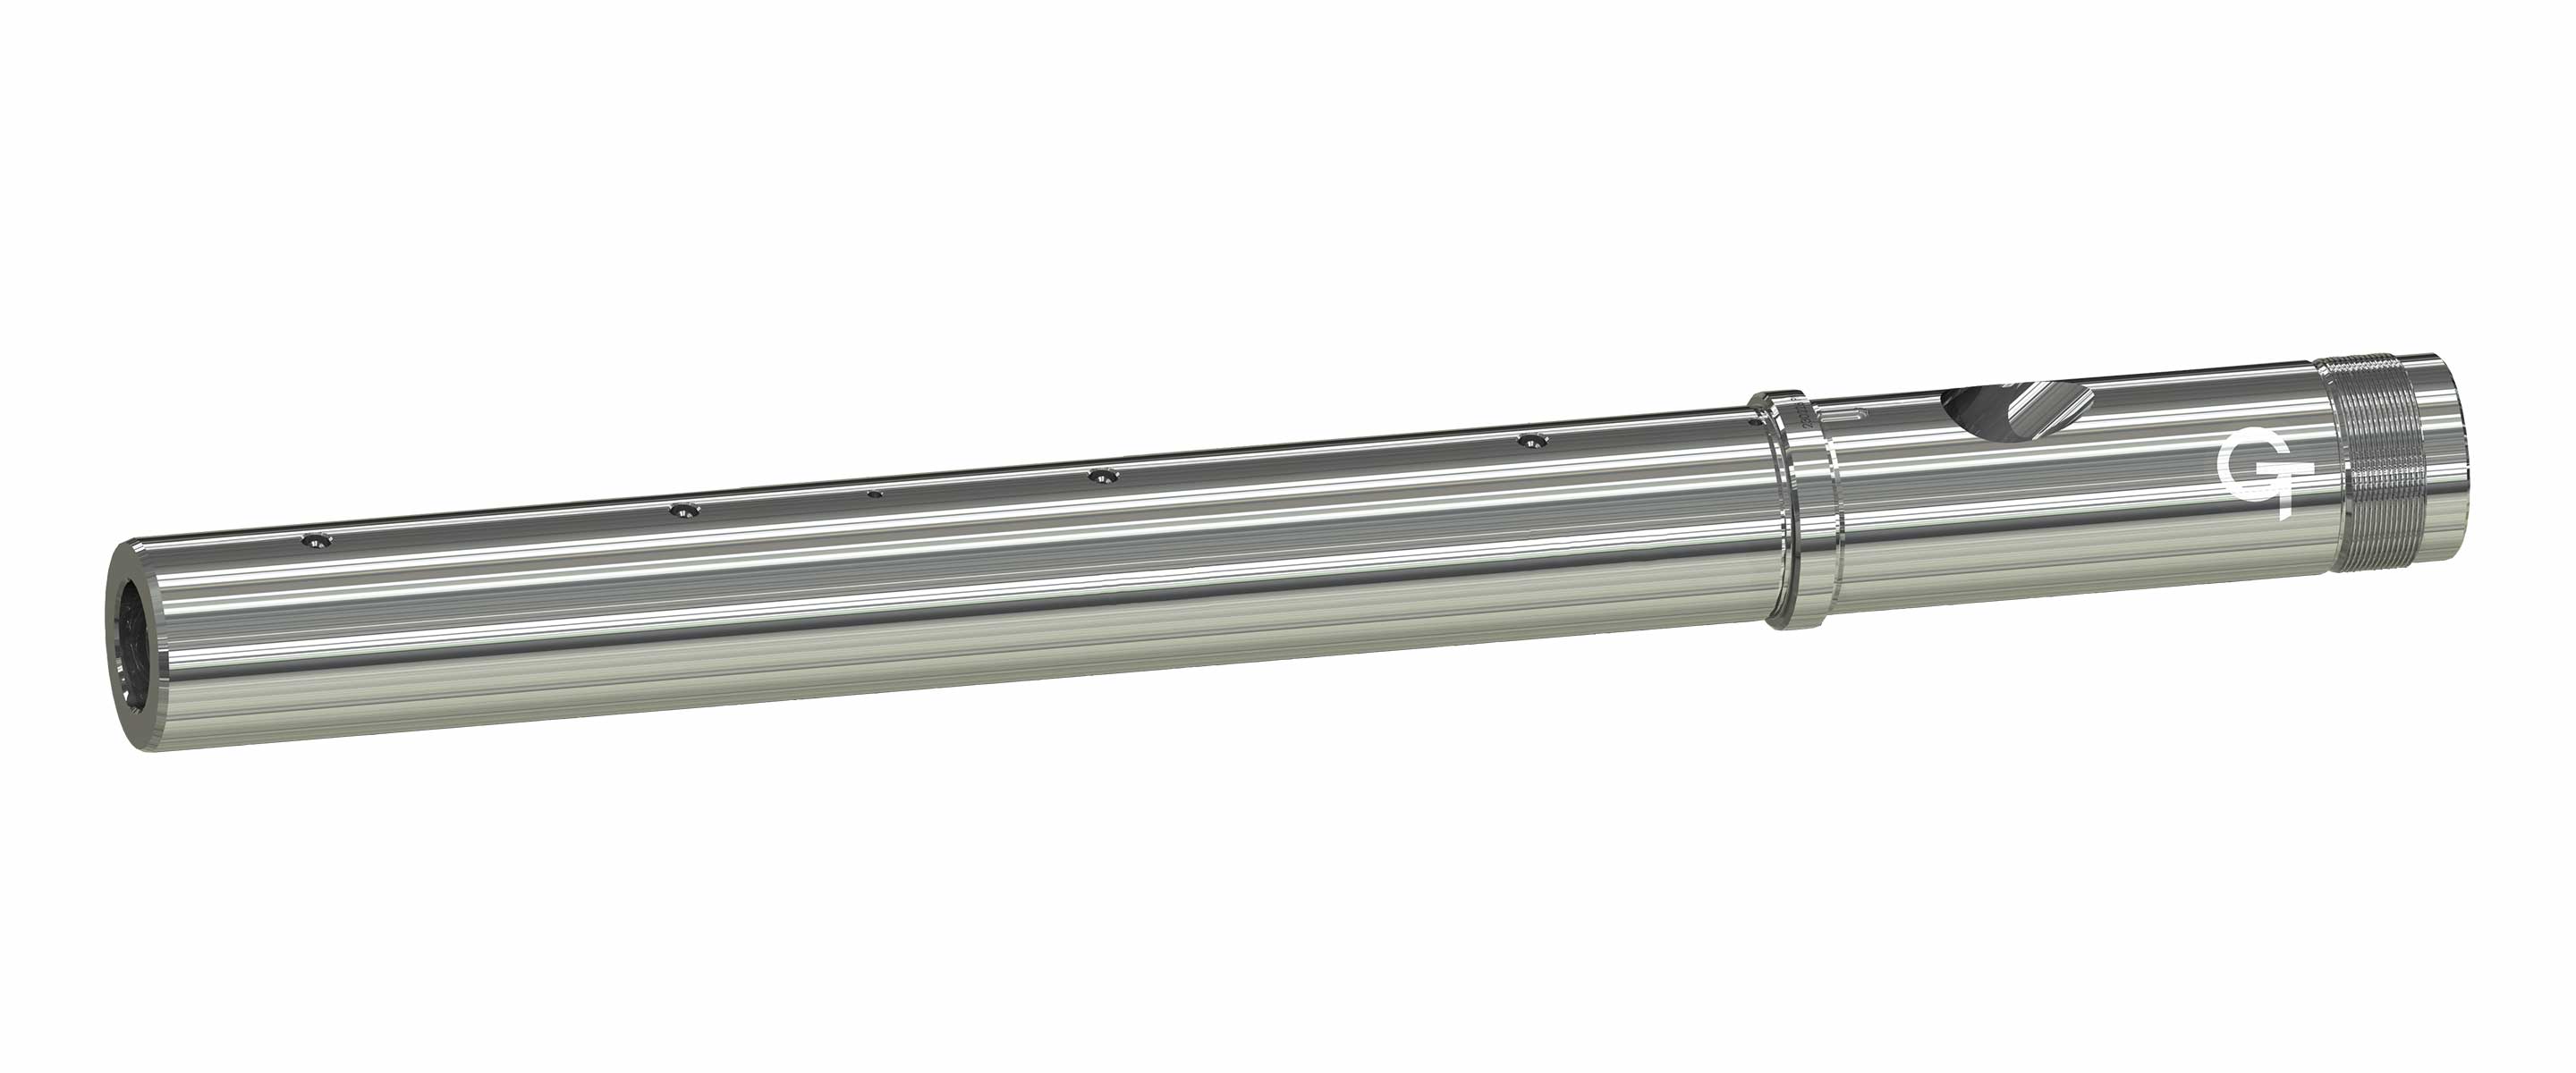 Der Thermoplast-Zylinder wird aus Bimetall hergestellt.